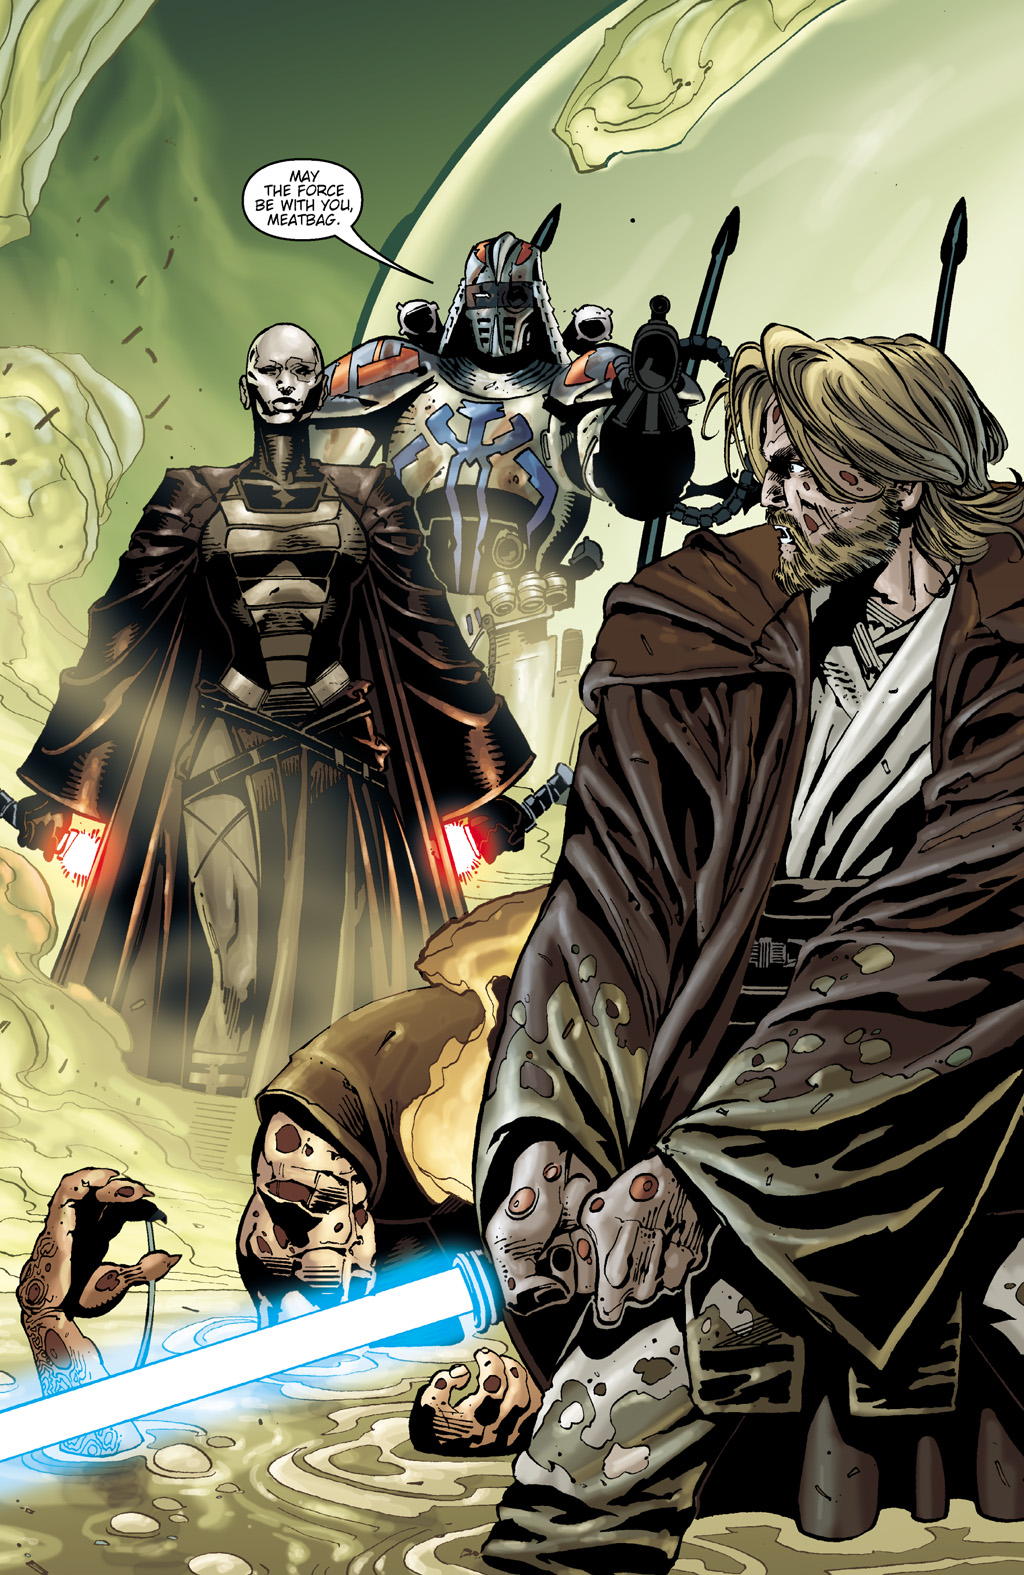 Read online Star Wars: Clone Wars comic -  Issue # TPB 2 - 27